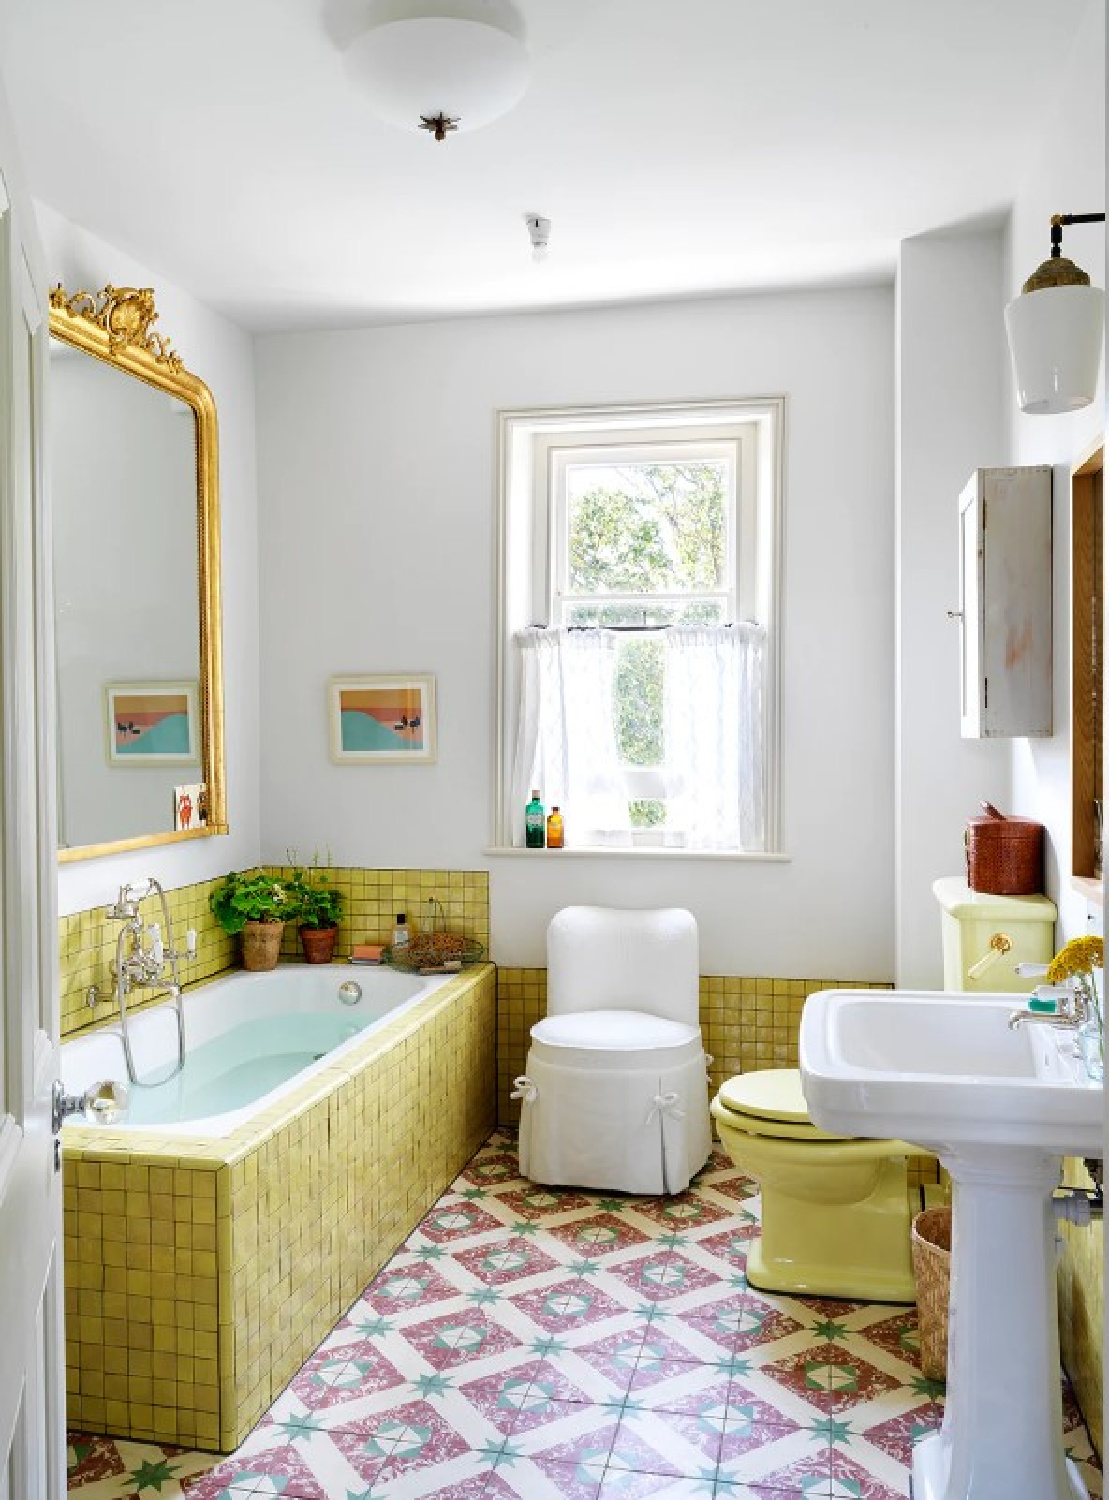 Lindo banheiro - foto de Simon Brown e design de interiores Beata Human.  #beataheuman #swedishfarmhouse